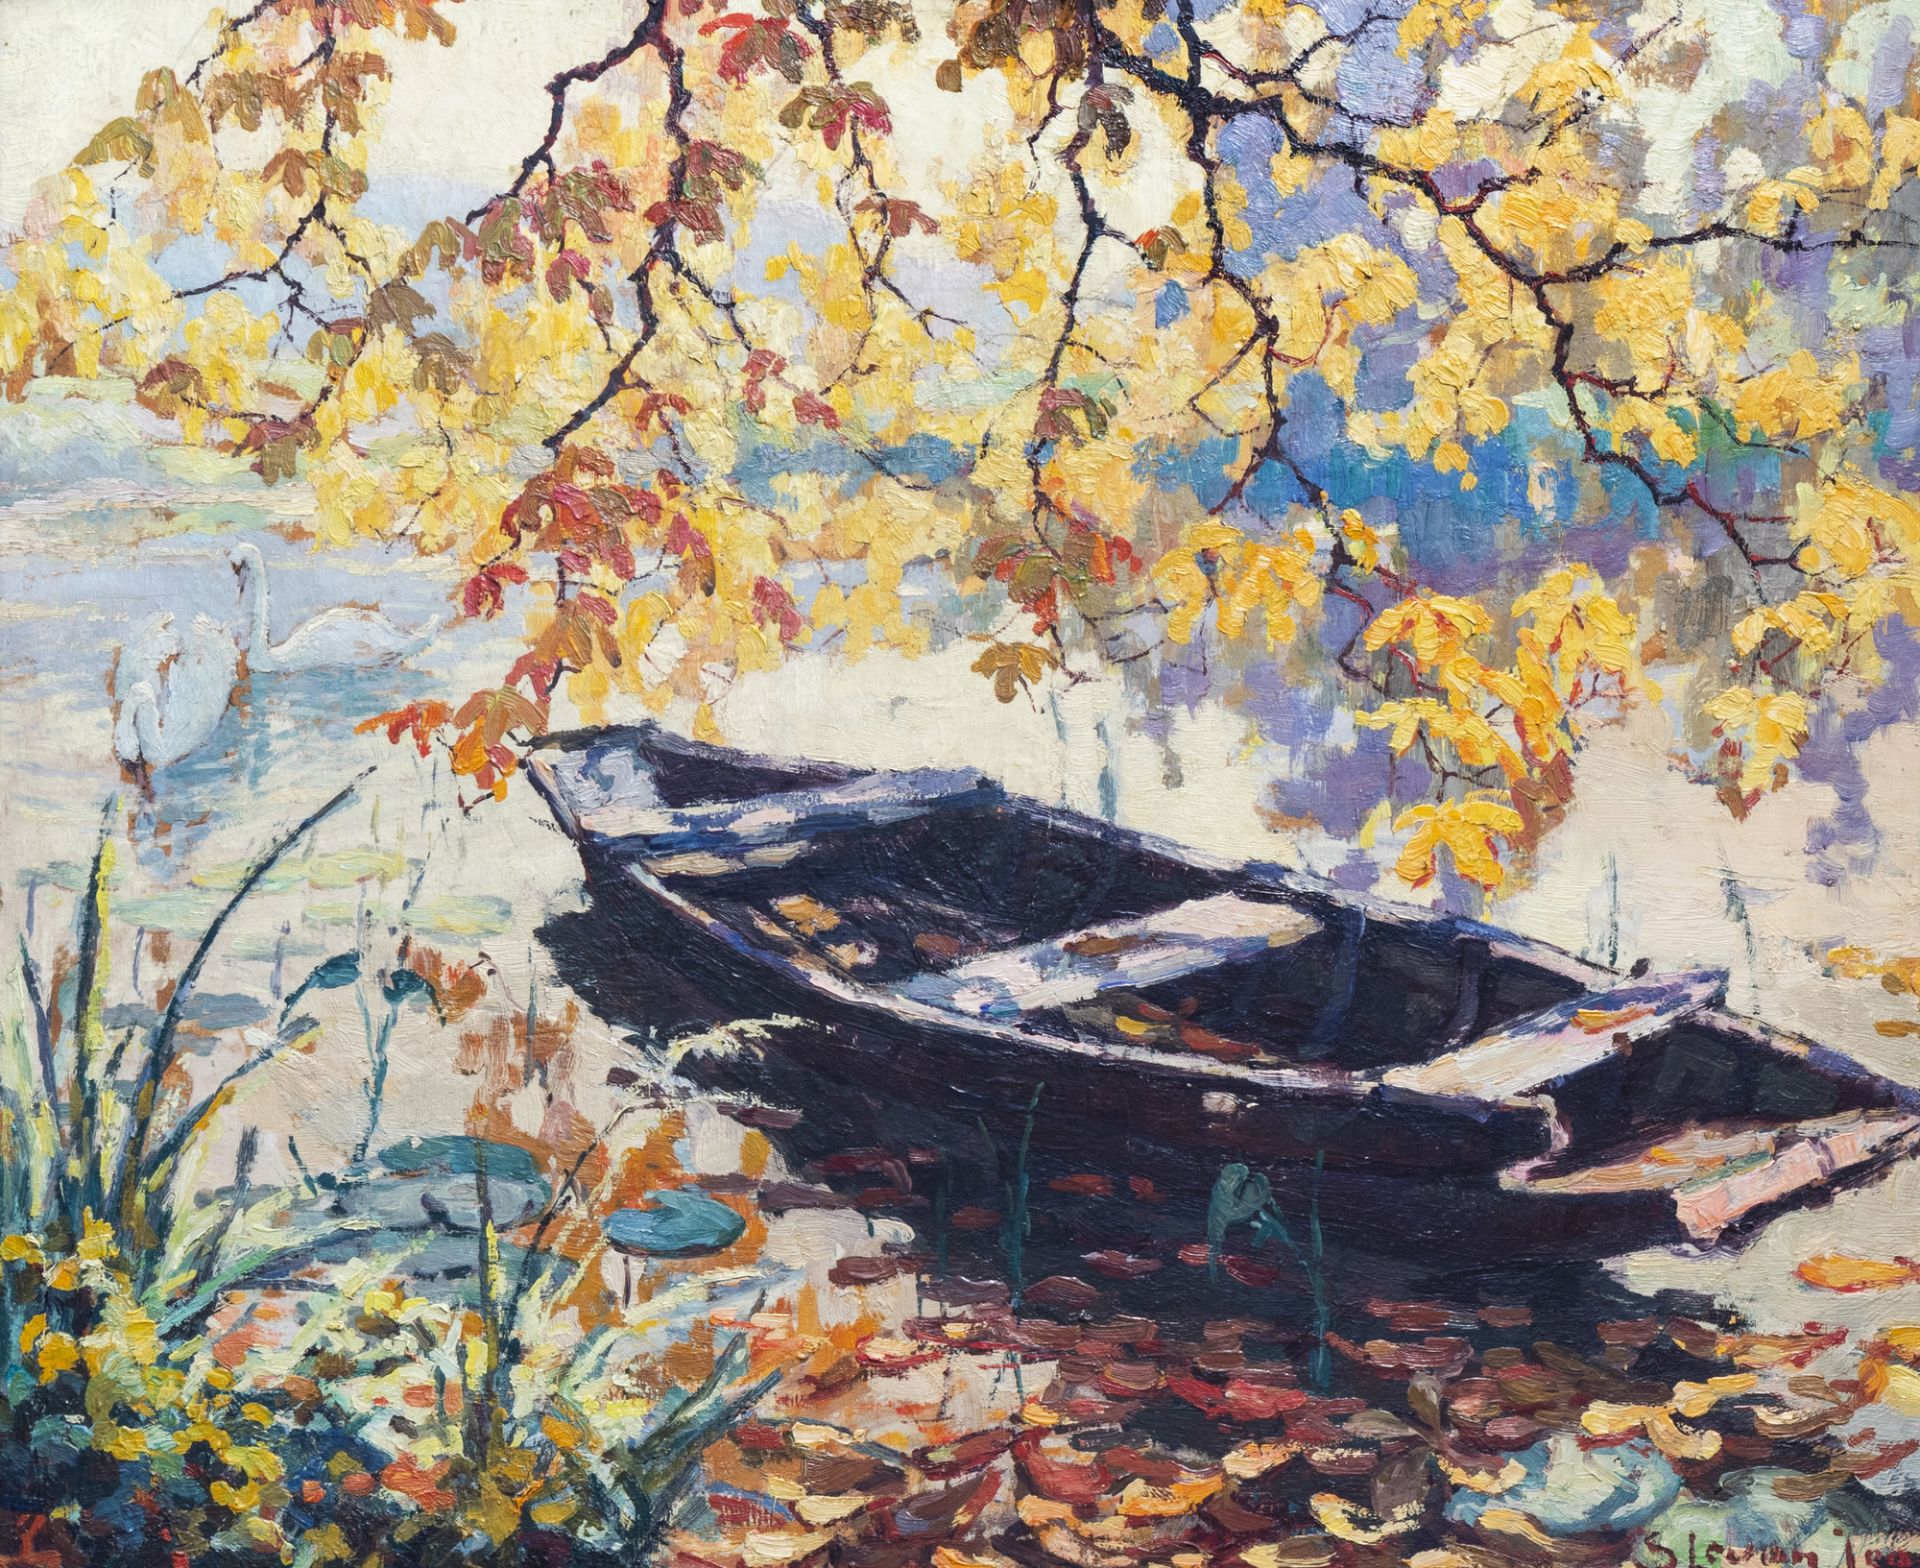 Jean Stevan (1896-1962): Sunlit riverbank with a sloop, oil on board